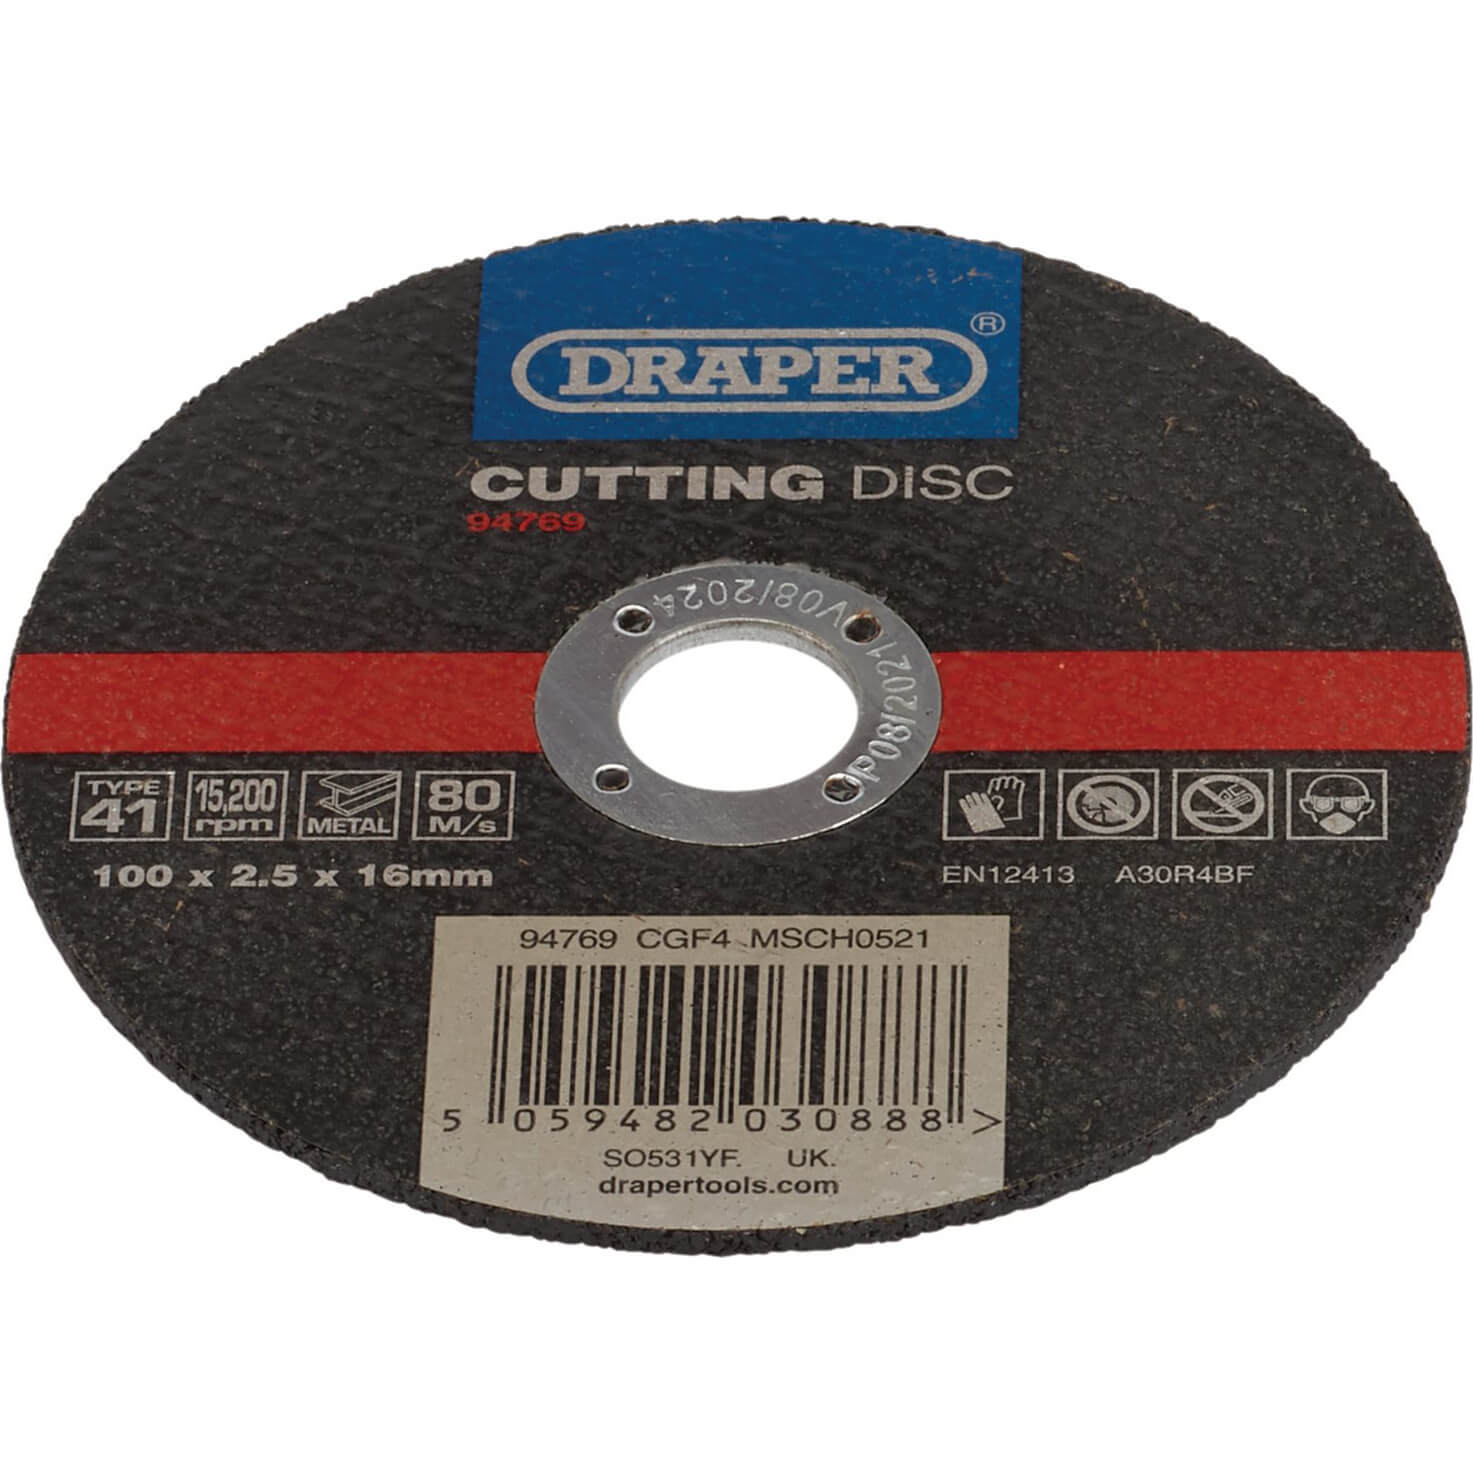 Draper Metal Cutting Disc 100mm 2.5mm 16mm